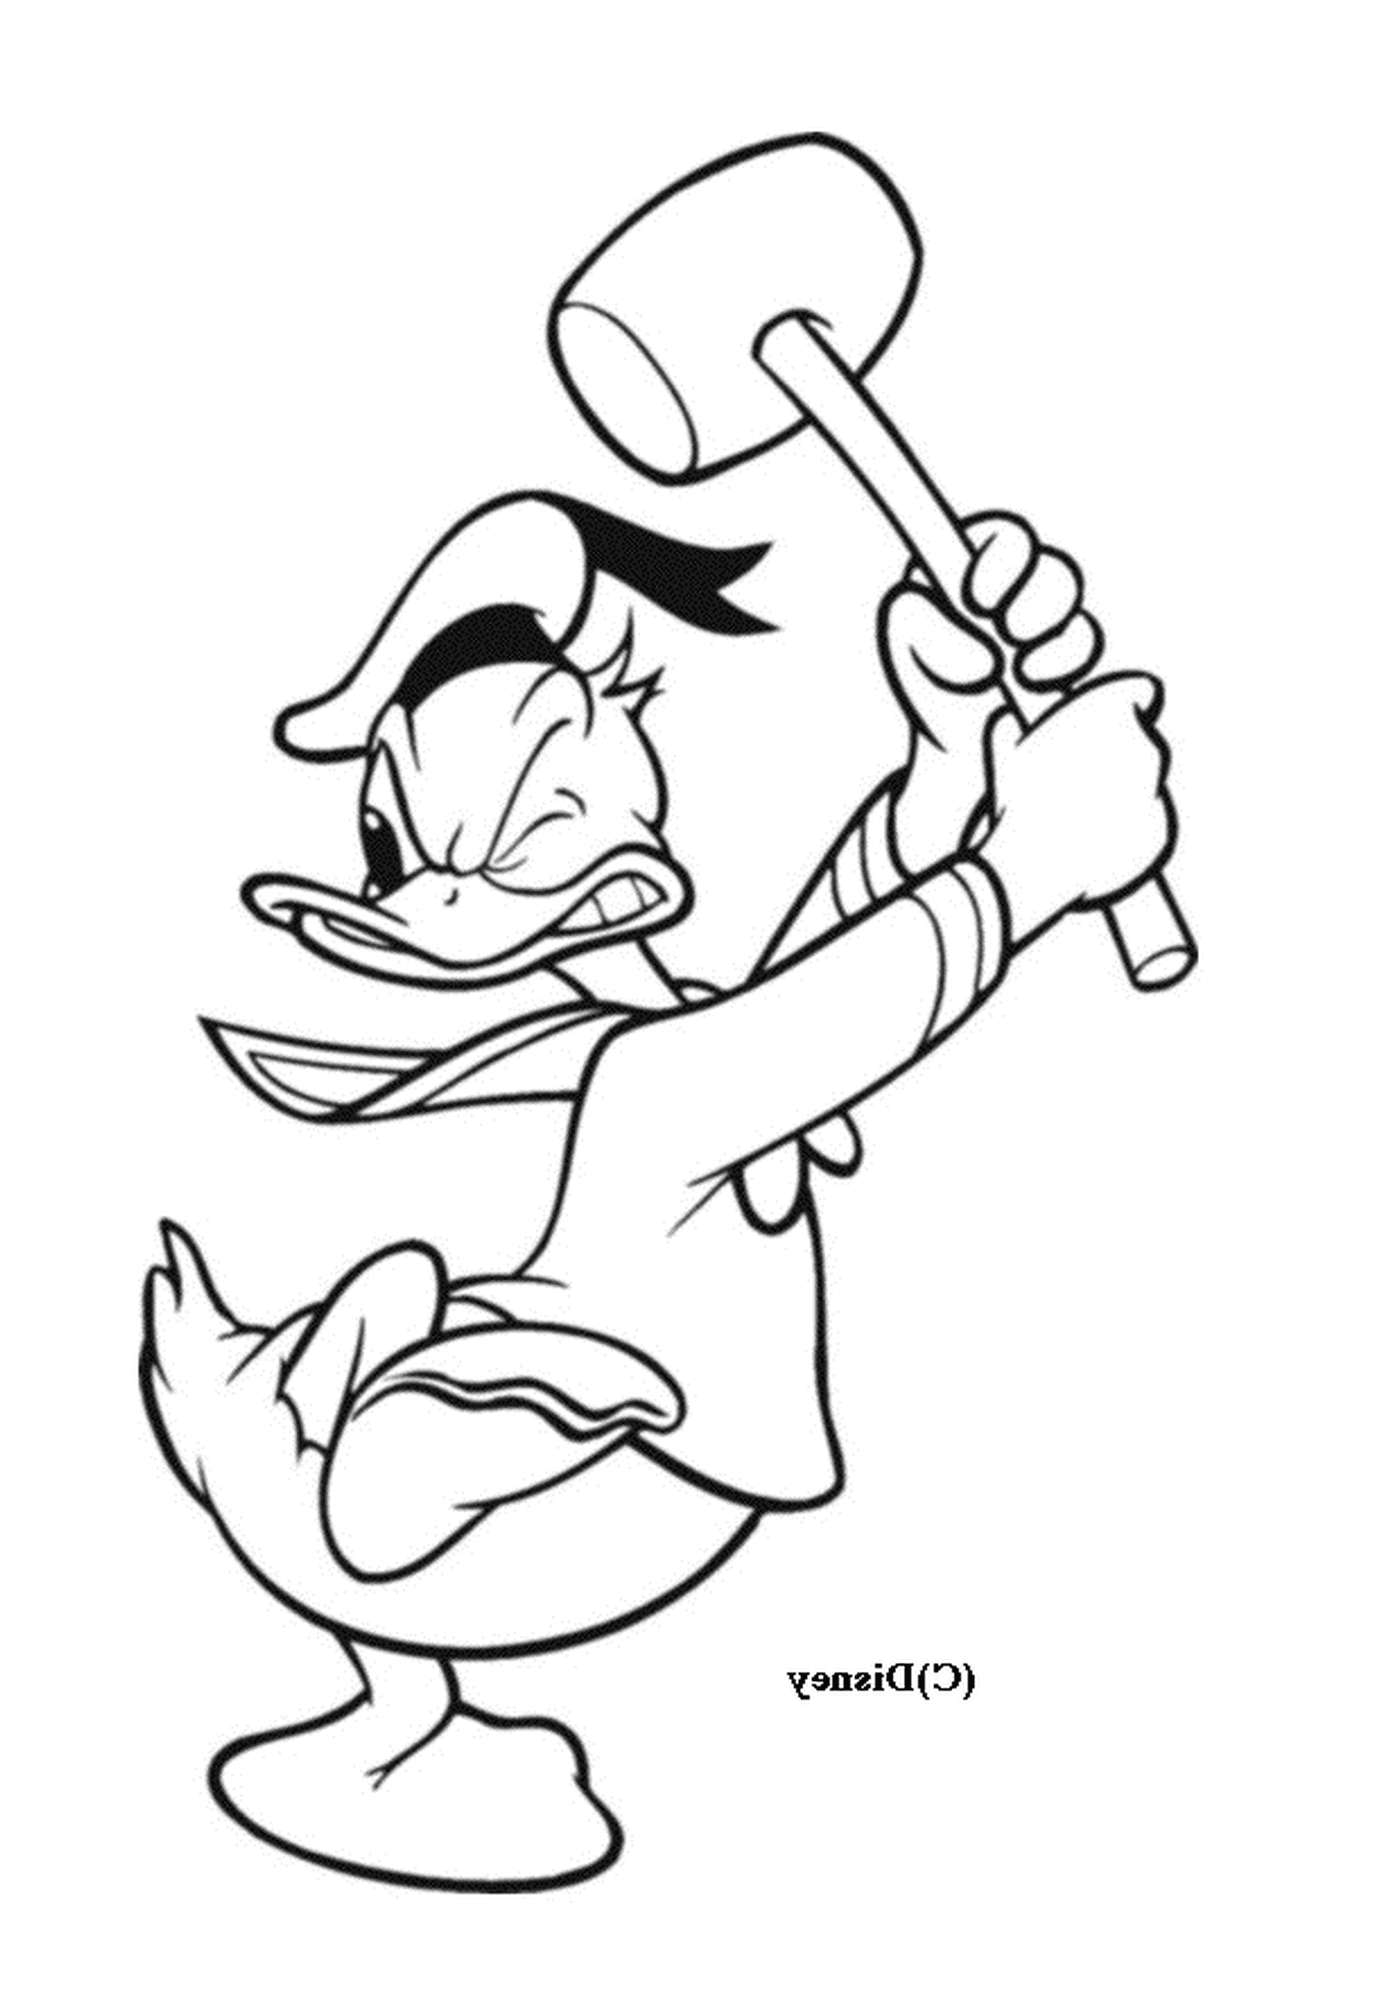 coloriage Donald avec une masse Disney